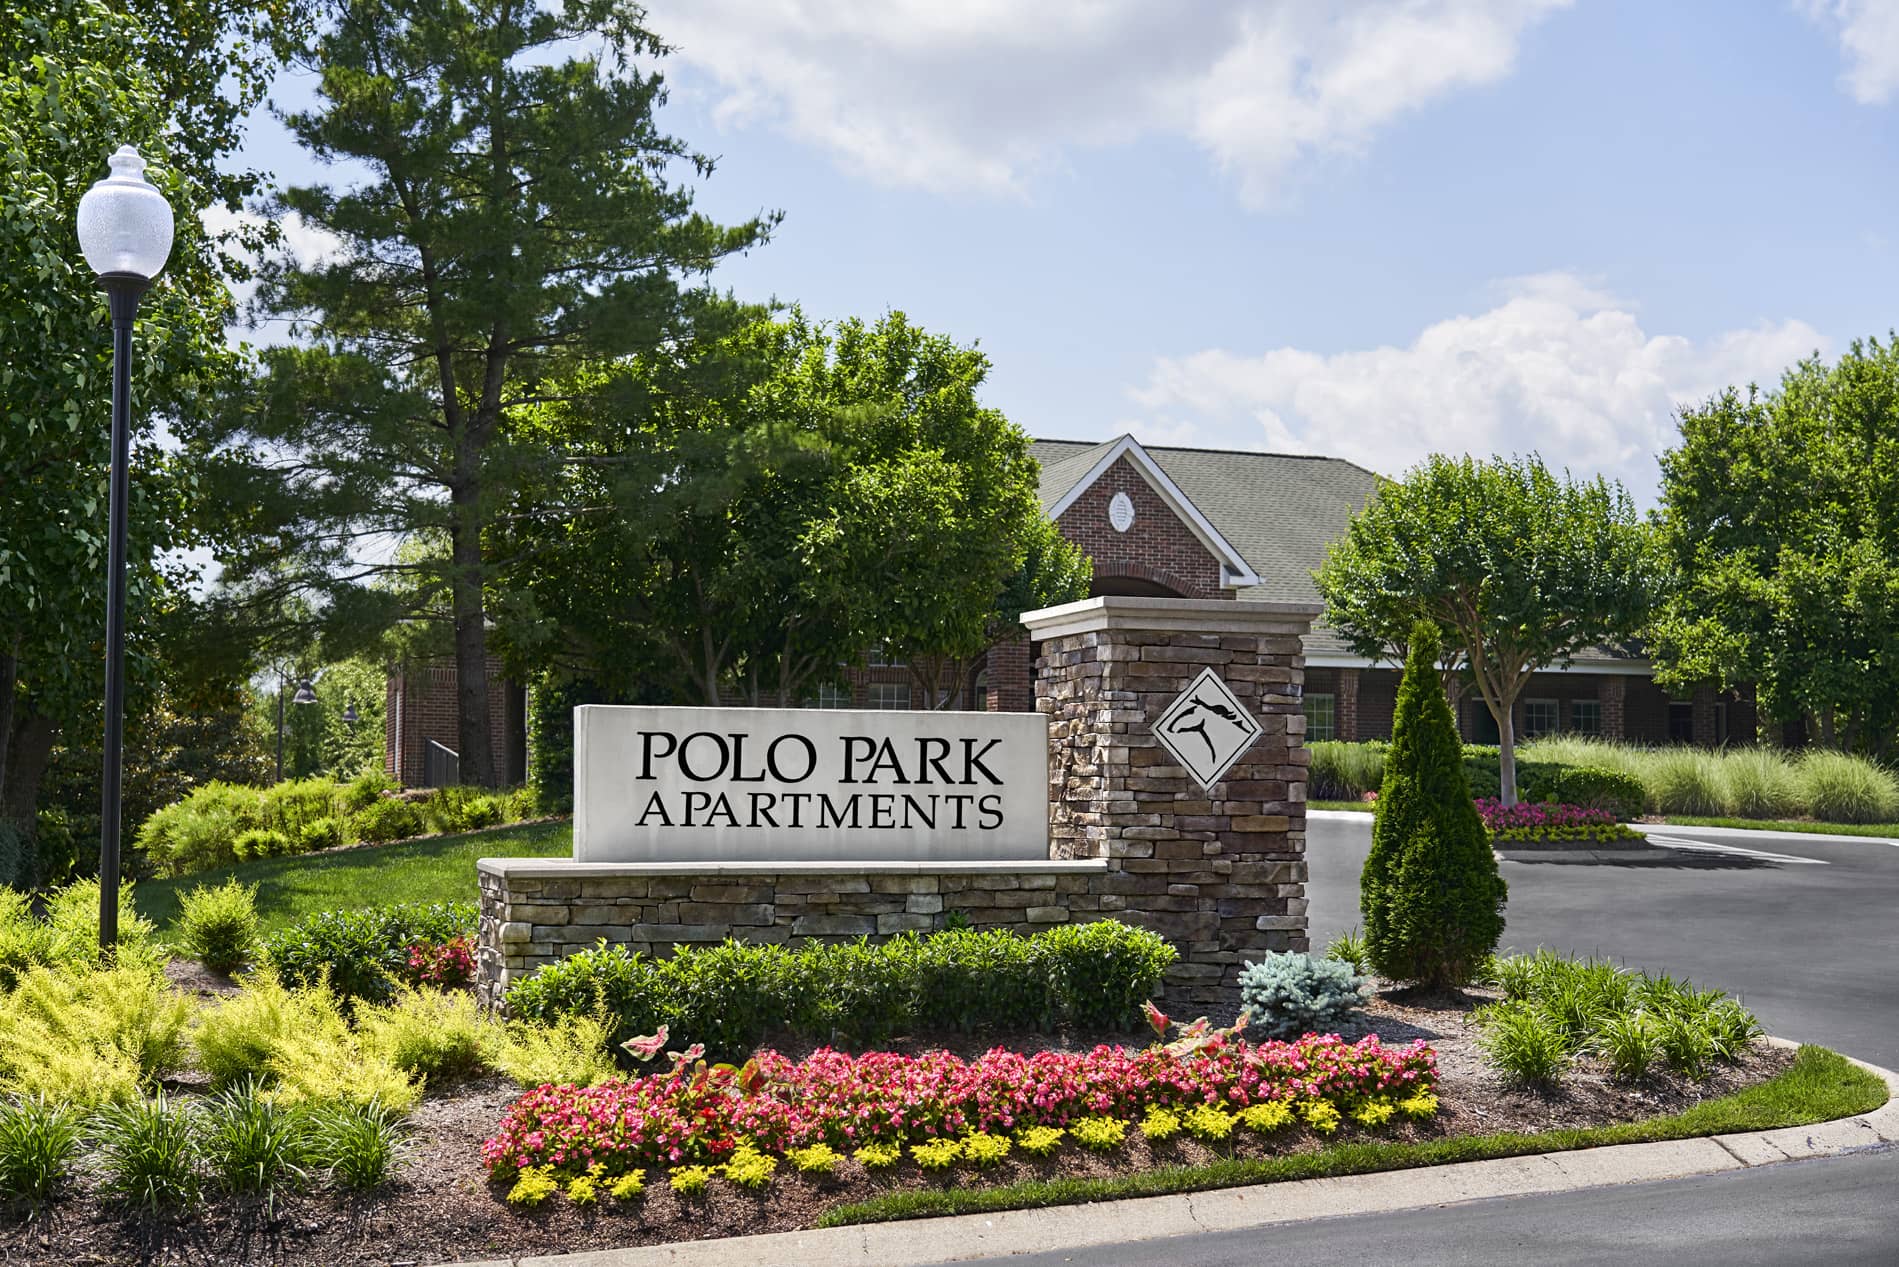 Polo Park Exterior Sign